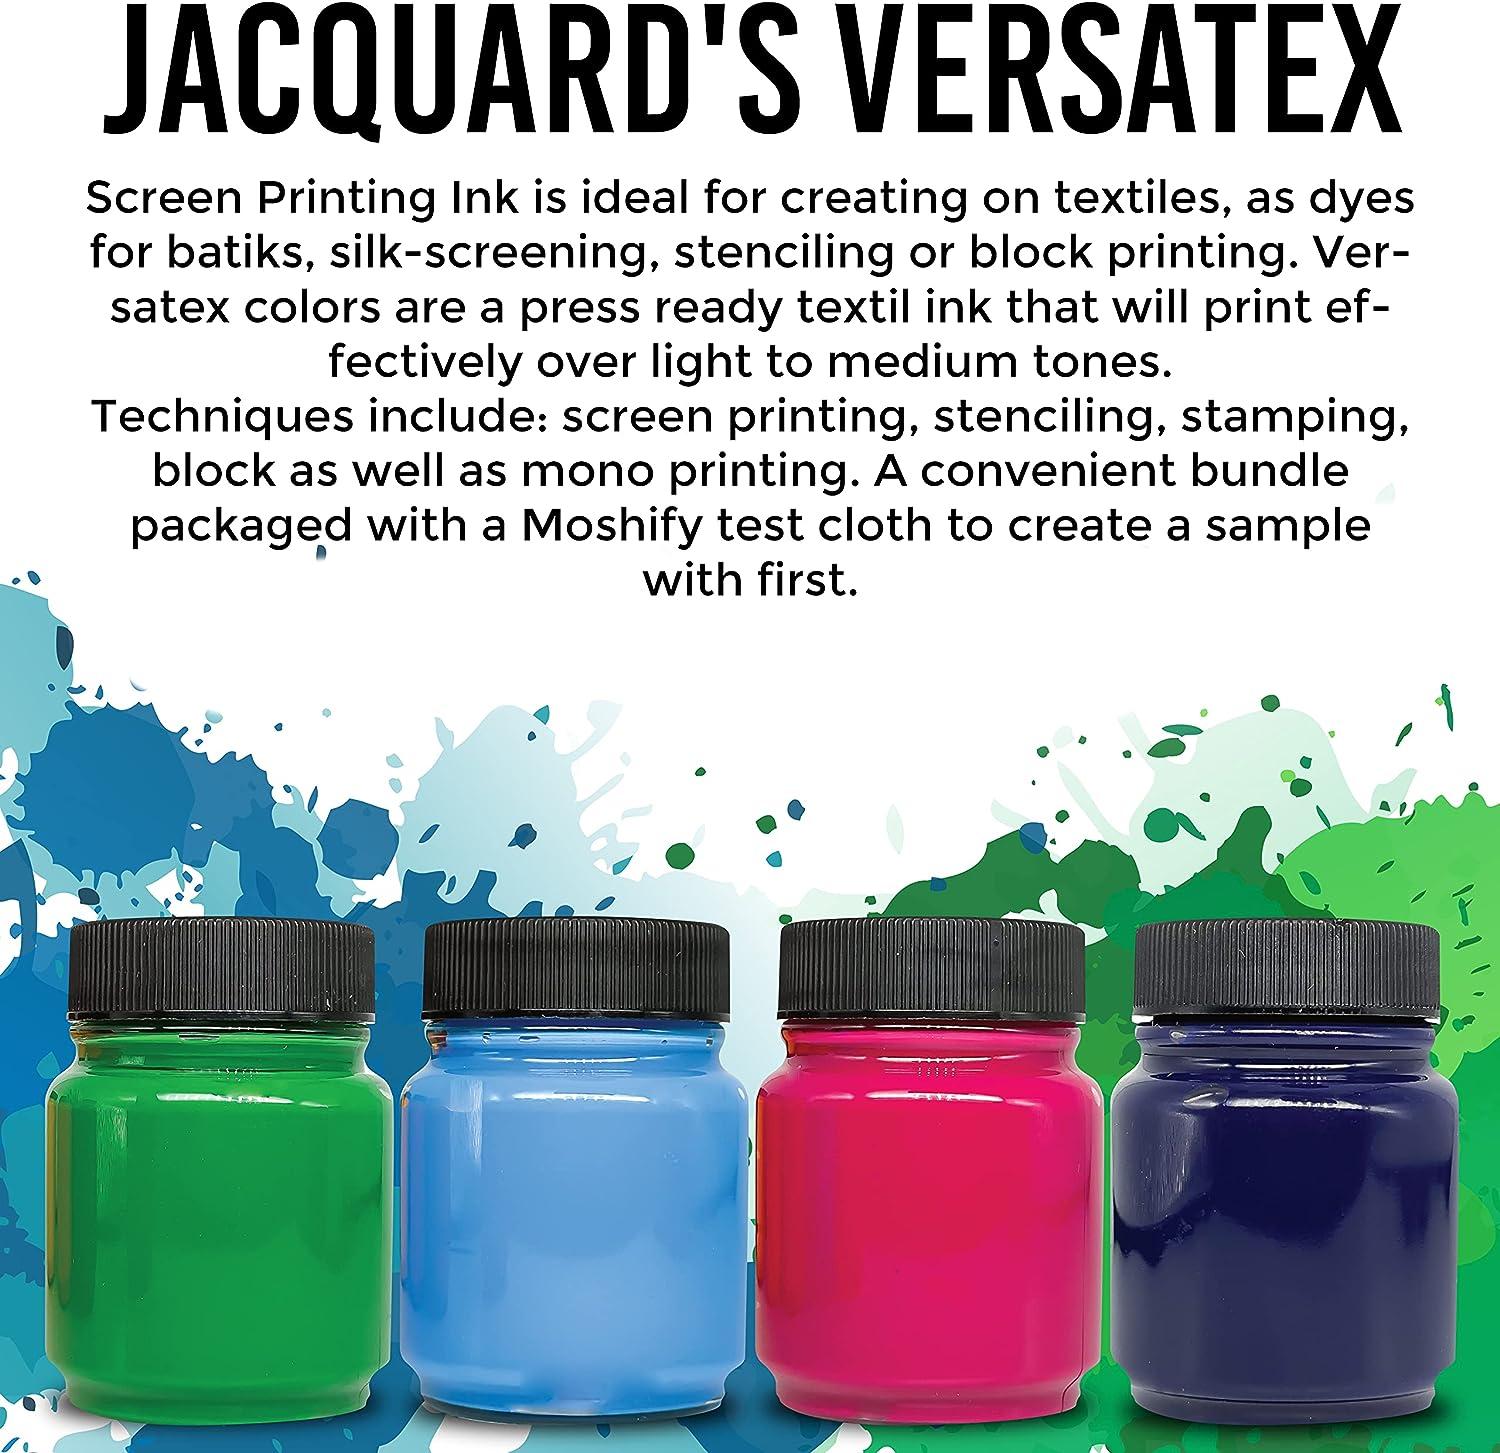 Versatex Screen Printing Ink